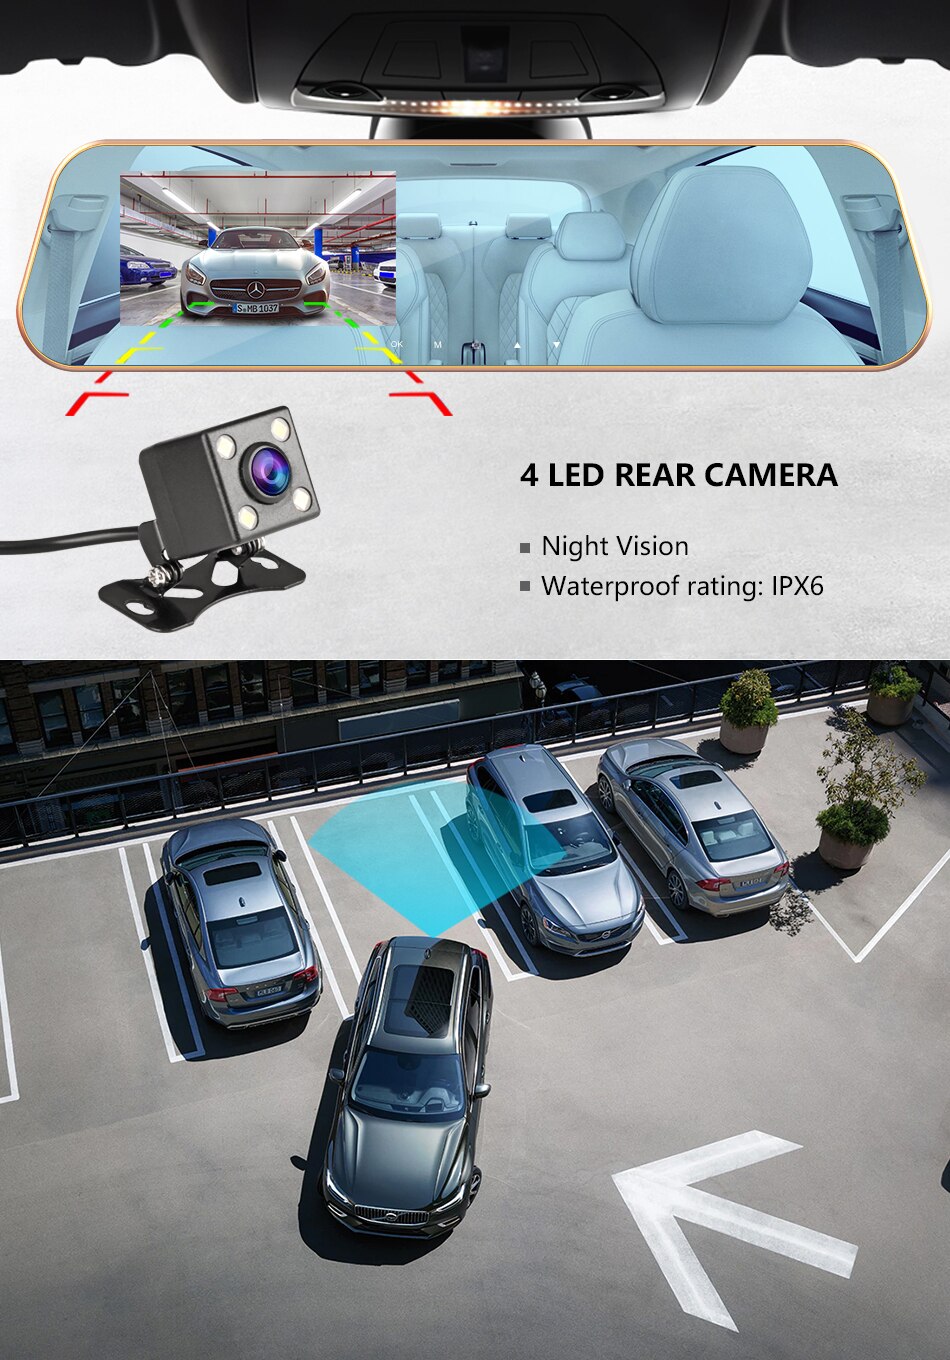 4.3 pouces Full HD 1080P double lentille voiture D – Grandado